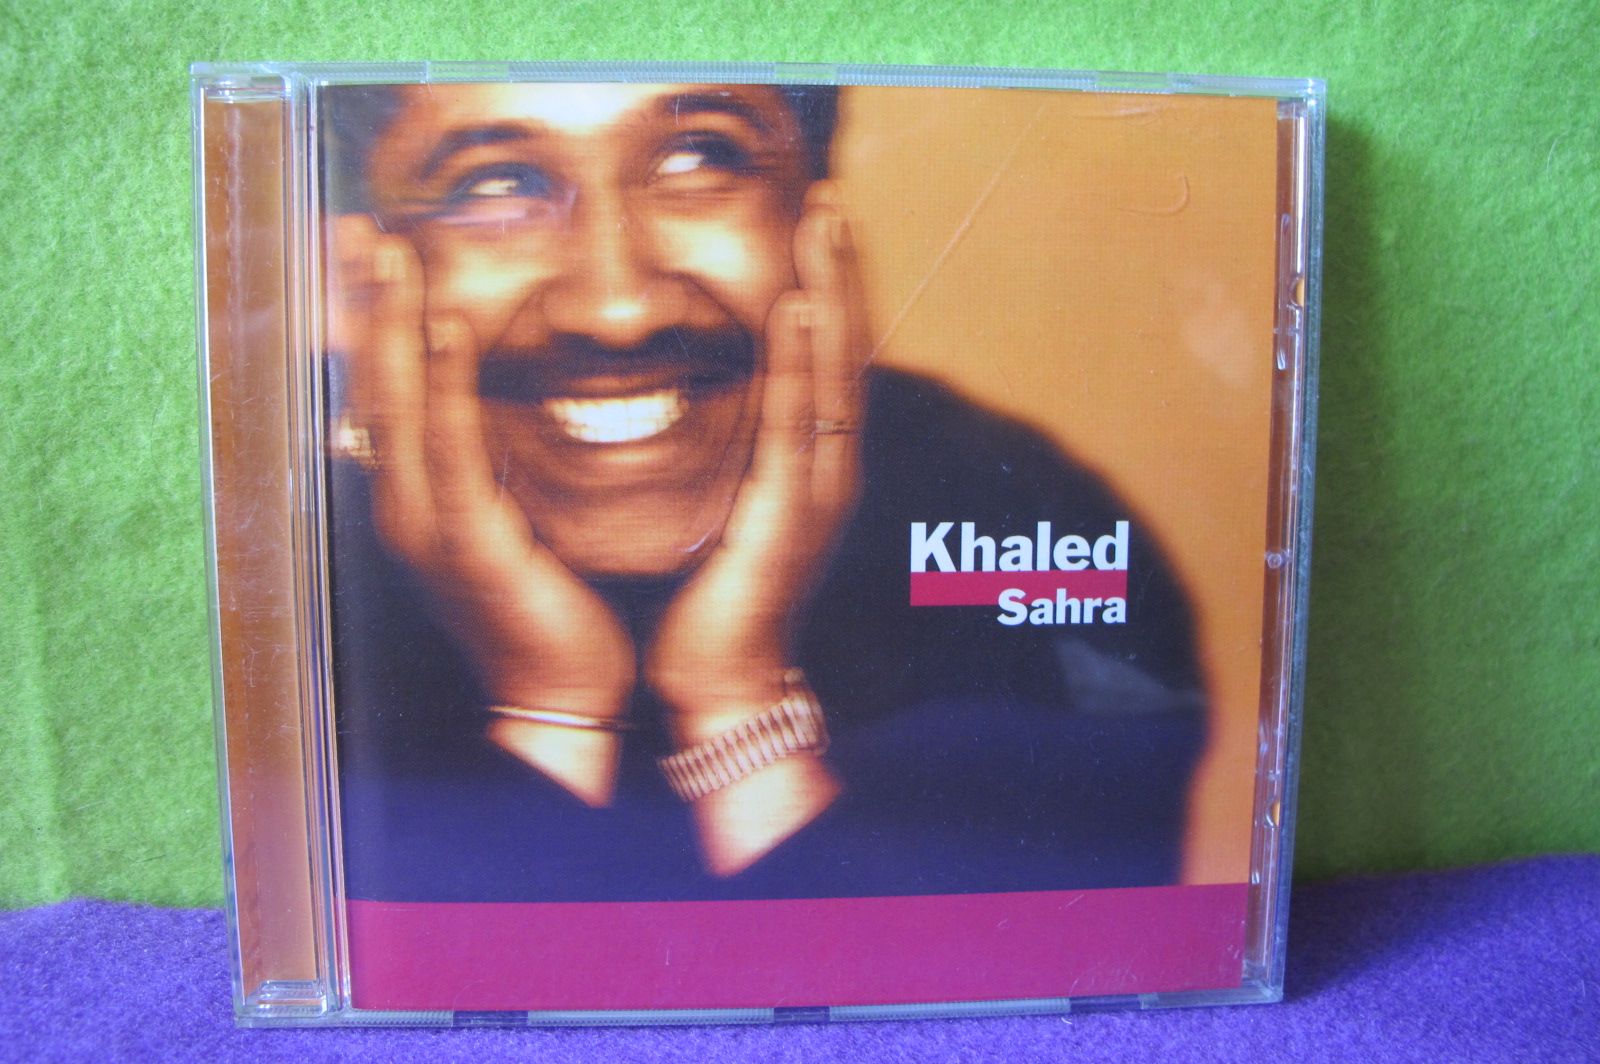 Płyta Khaled Sahra CD 13647655273 - Sklepy, Opinie, Ceny w Allegro.pl